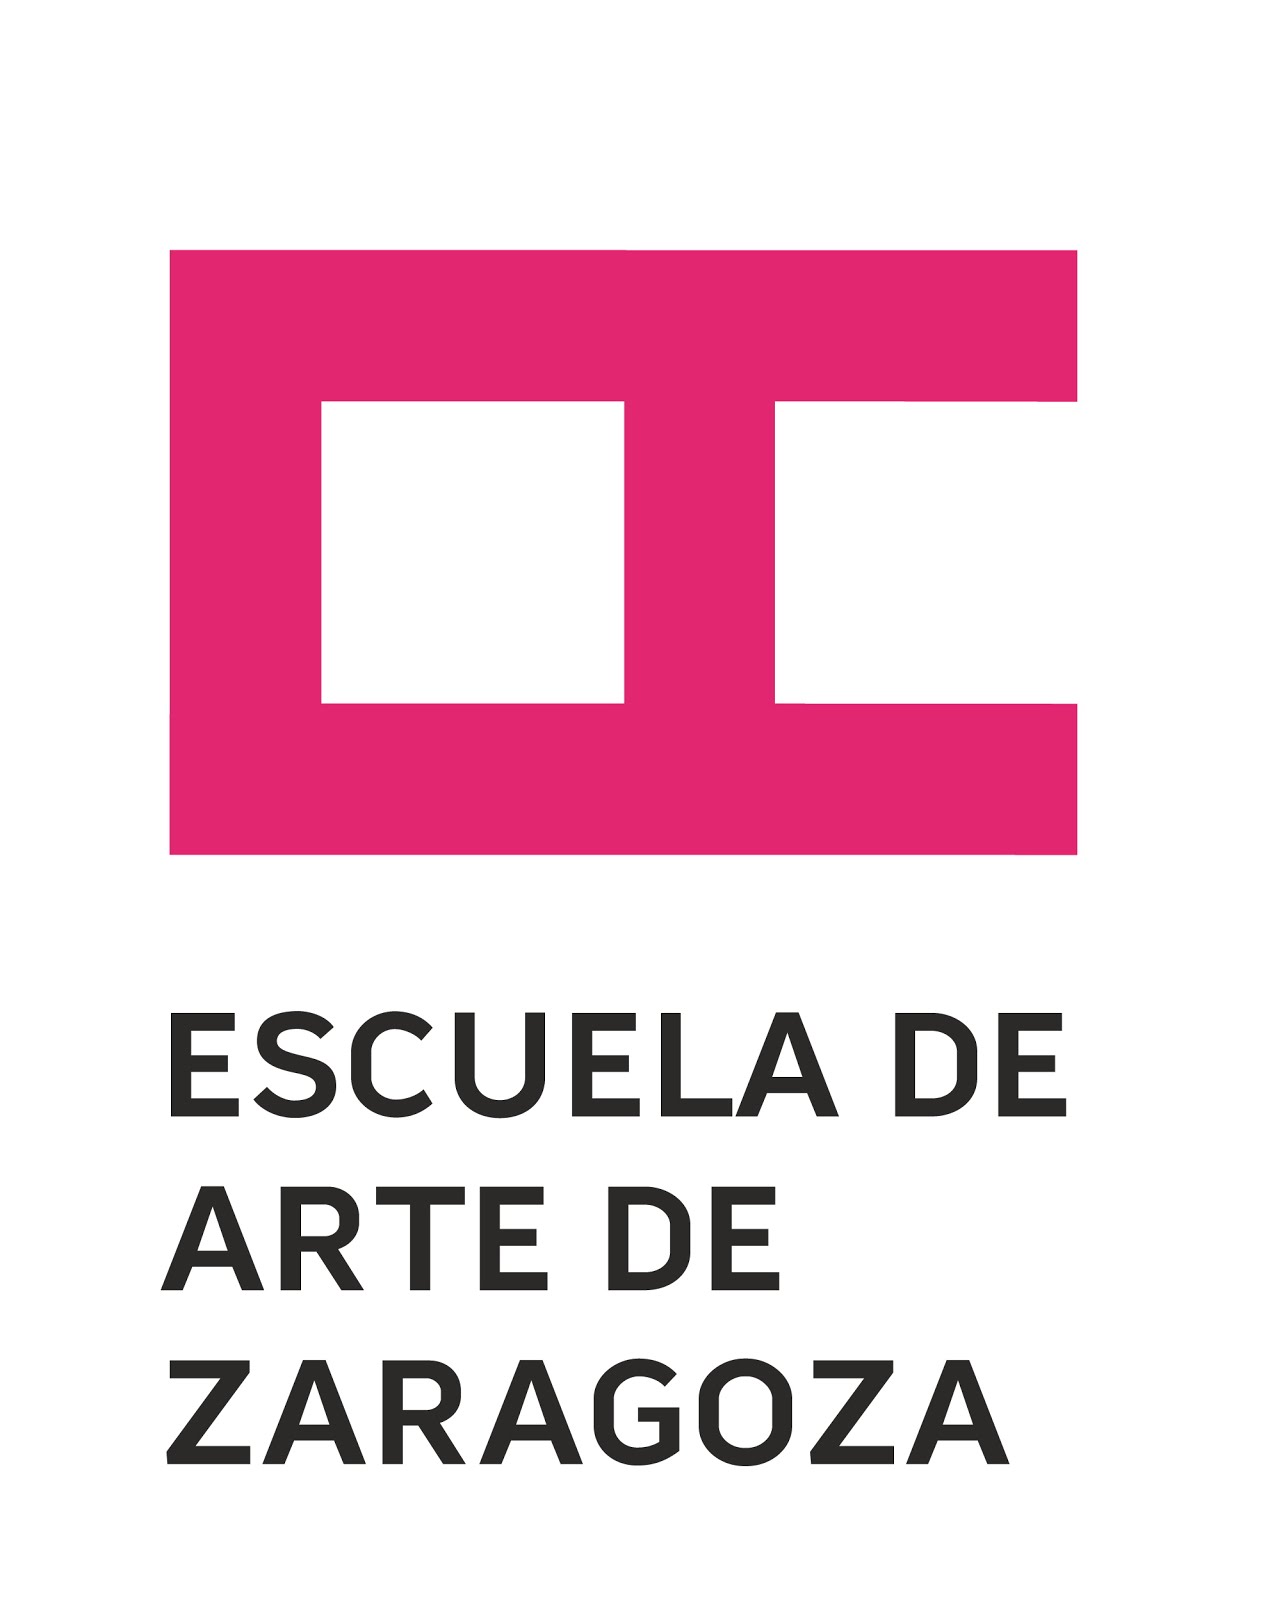 Escuela de Arte de Zaragoza